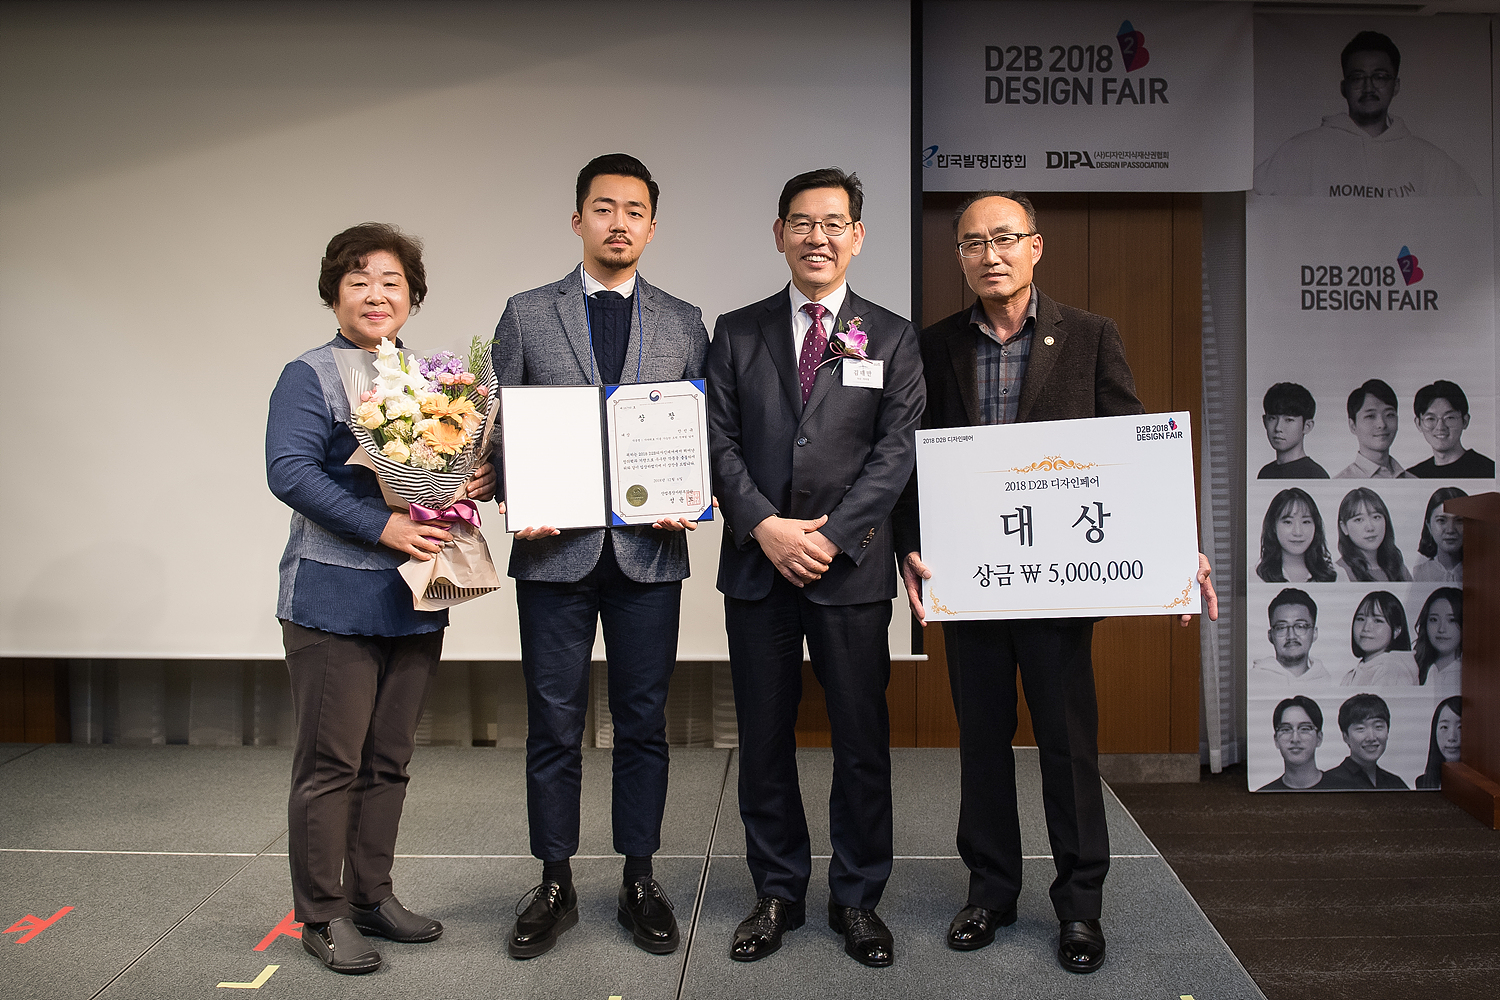 2018년 D2B 디자인페어에서 대상을 수상한 안민규 학생(왼쪽 두 번째)이 김태만 특허청 차장(왼쪽 세 번째), 부모님과 함께 기념촬영을 하고 있다.